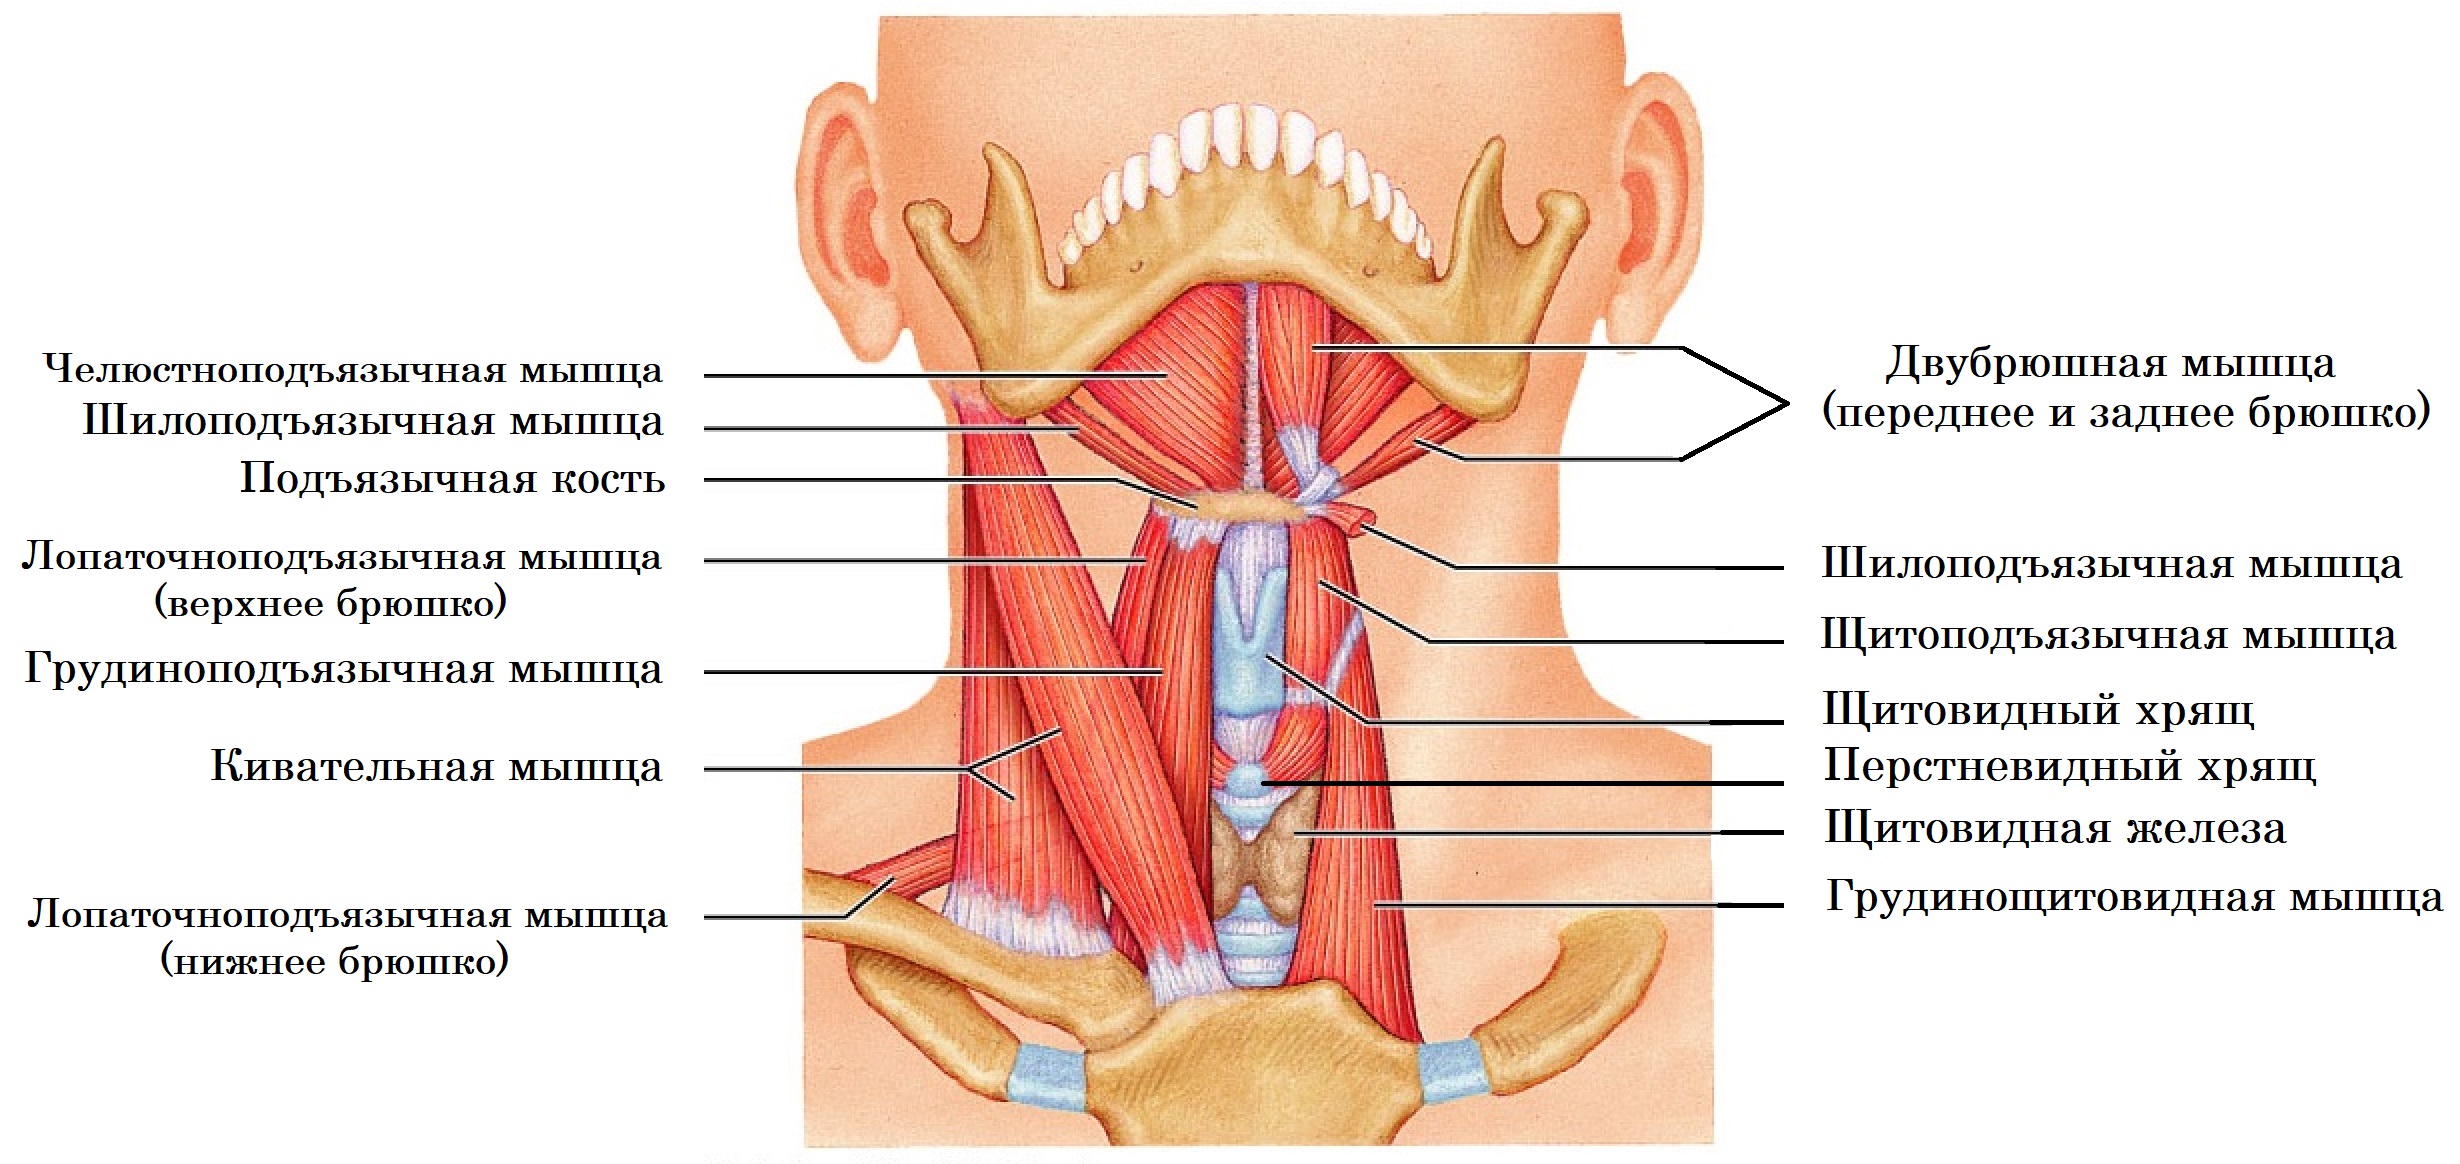 Мышцы покрывающие щитовидную железу спереди